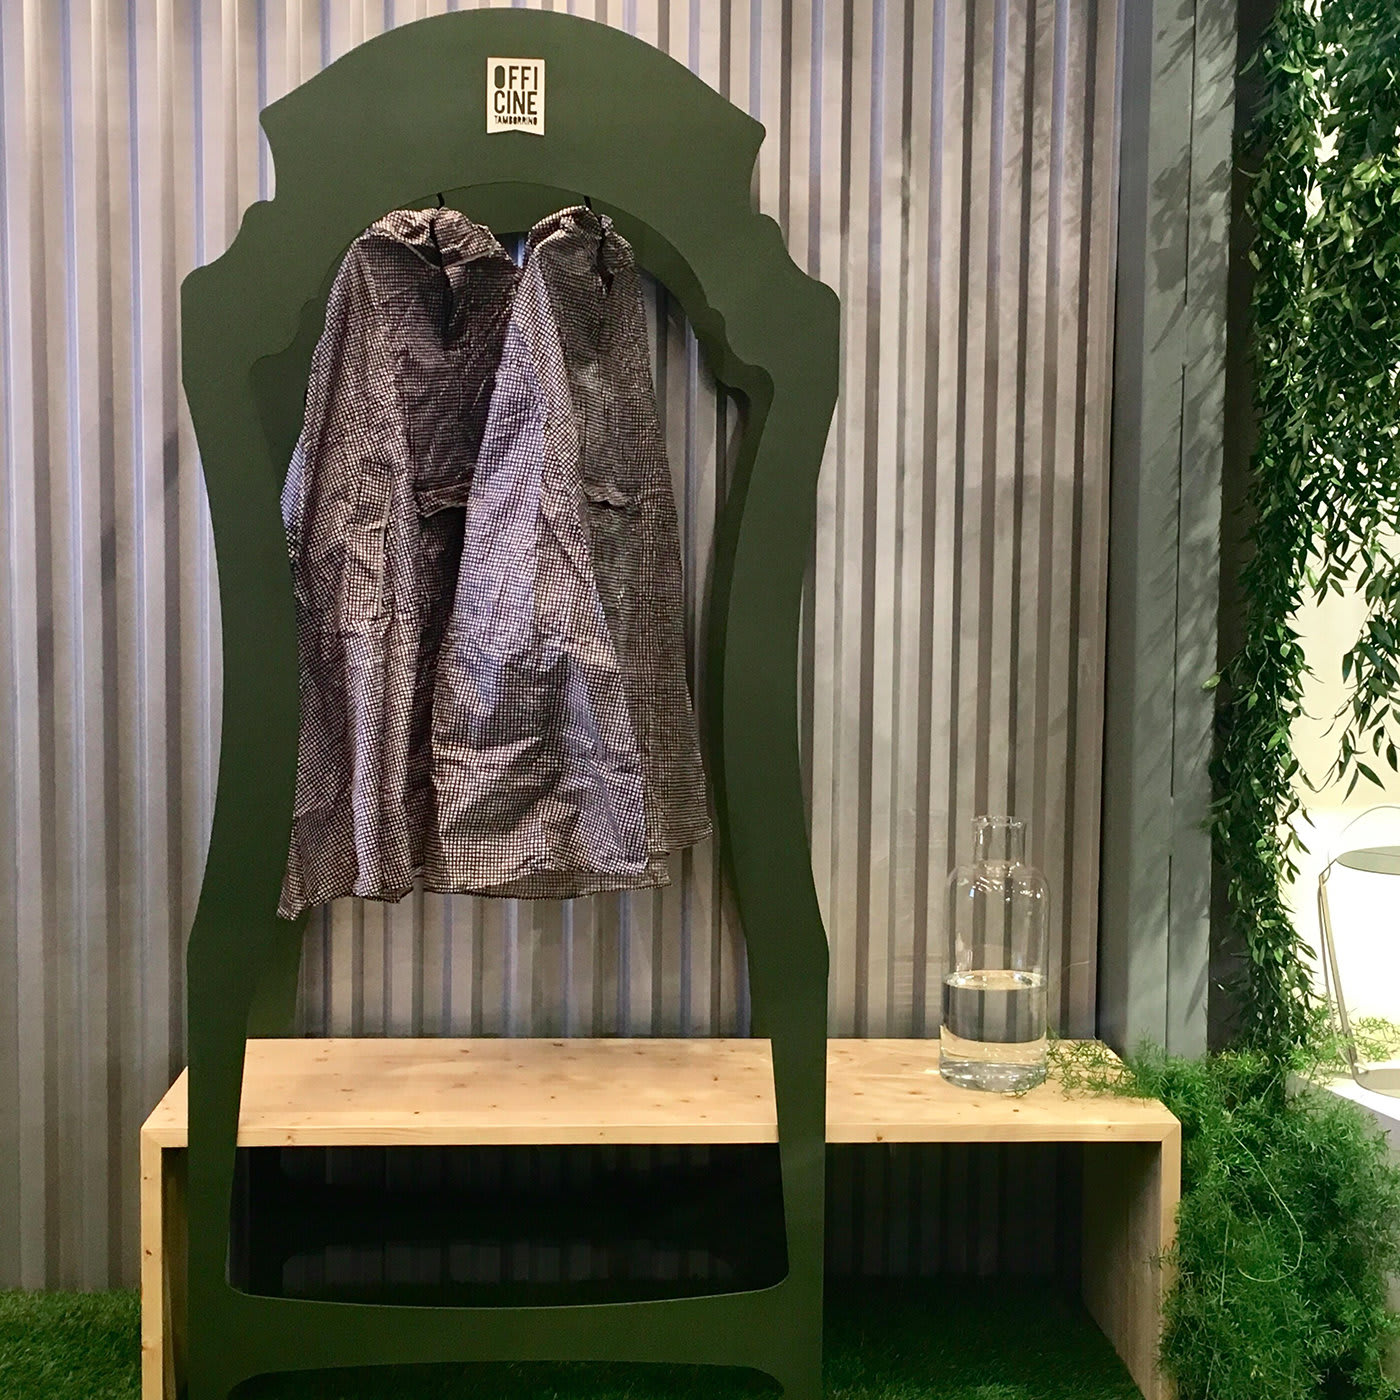 Segno Wardrobe with Bench #1 by Flore & Venezia - Officine Tamborrino